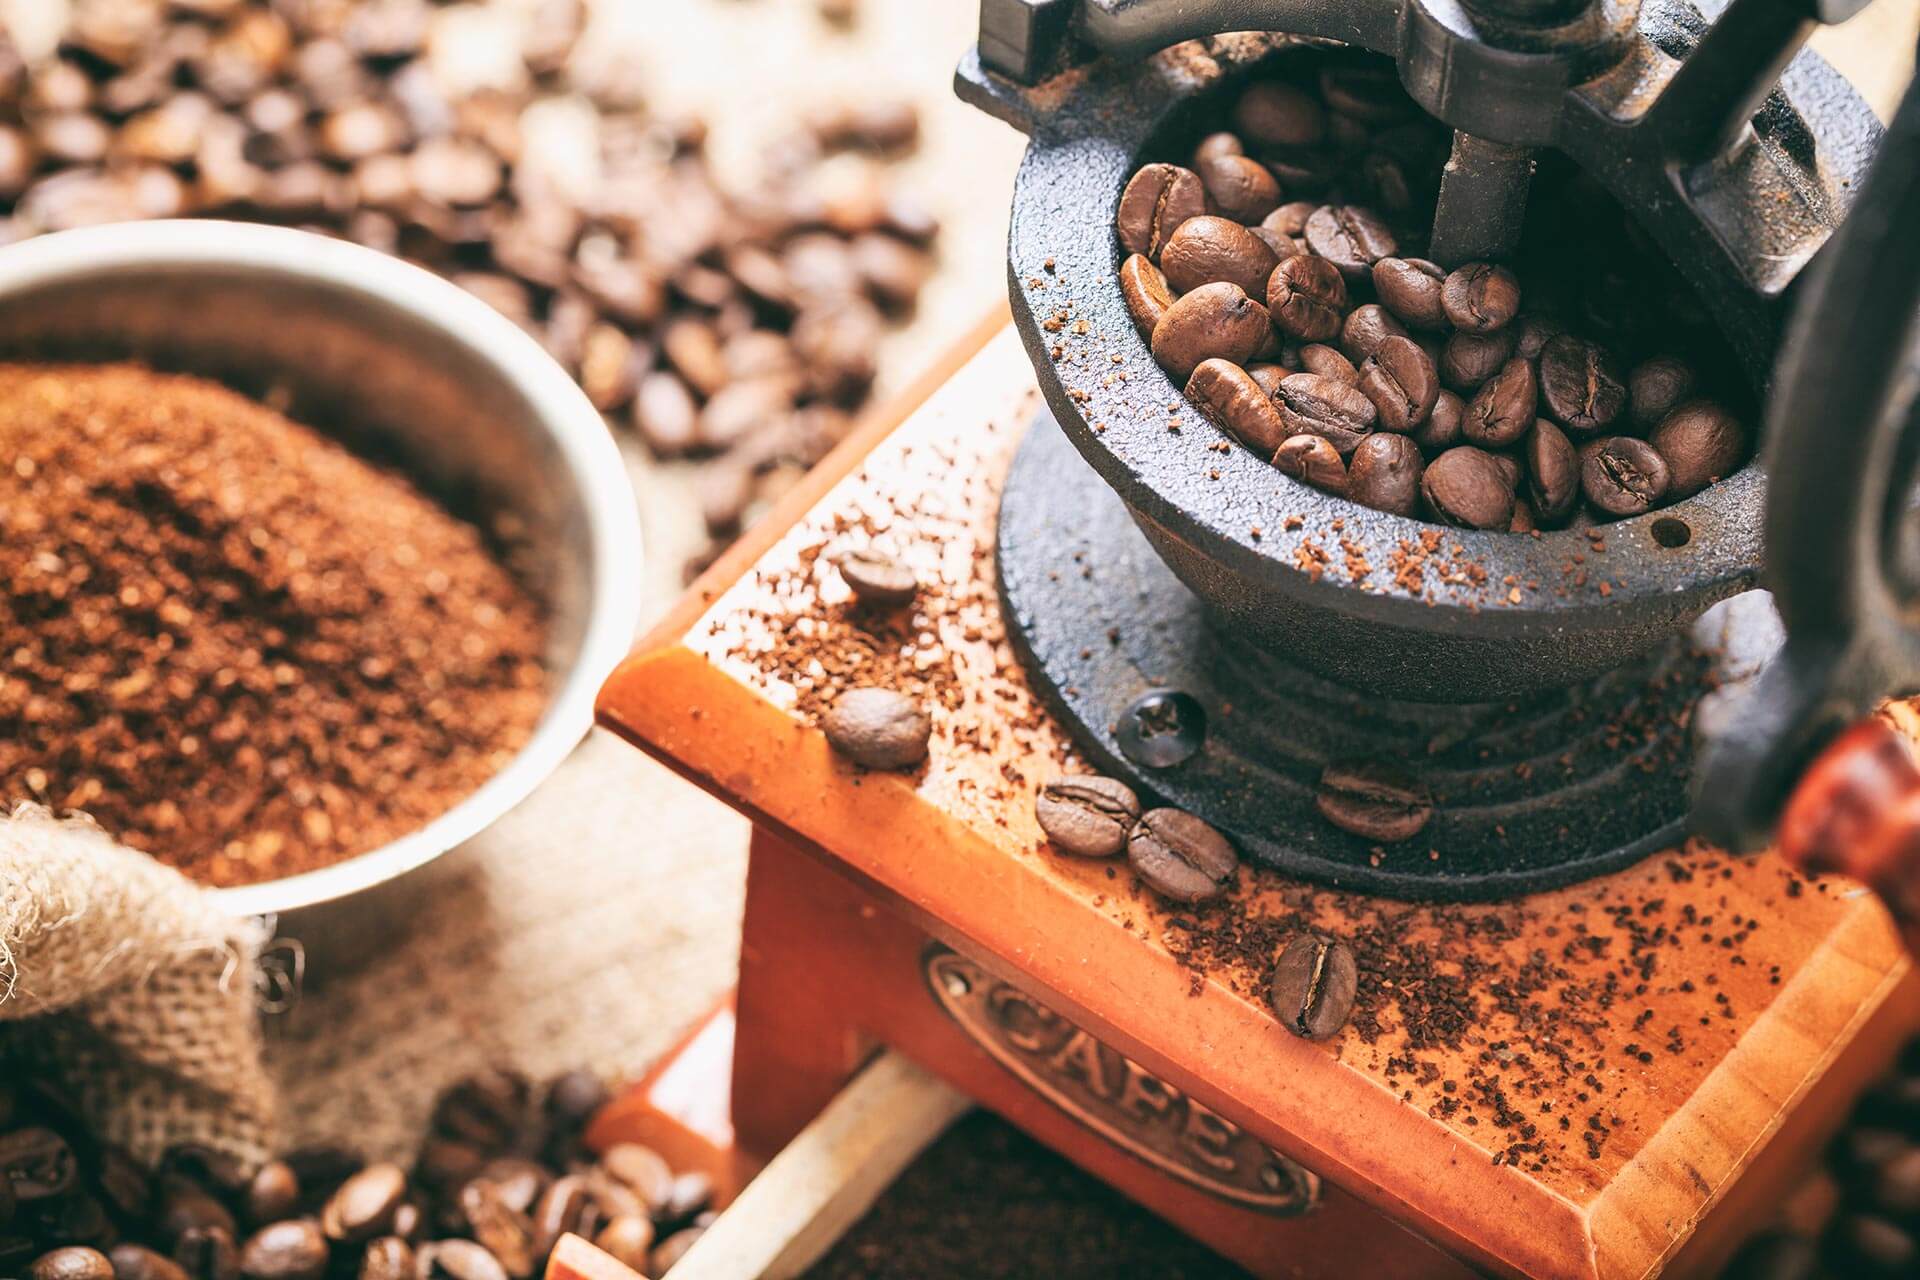 Как приготовить кофе в зернах в домашних условиях